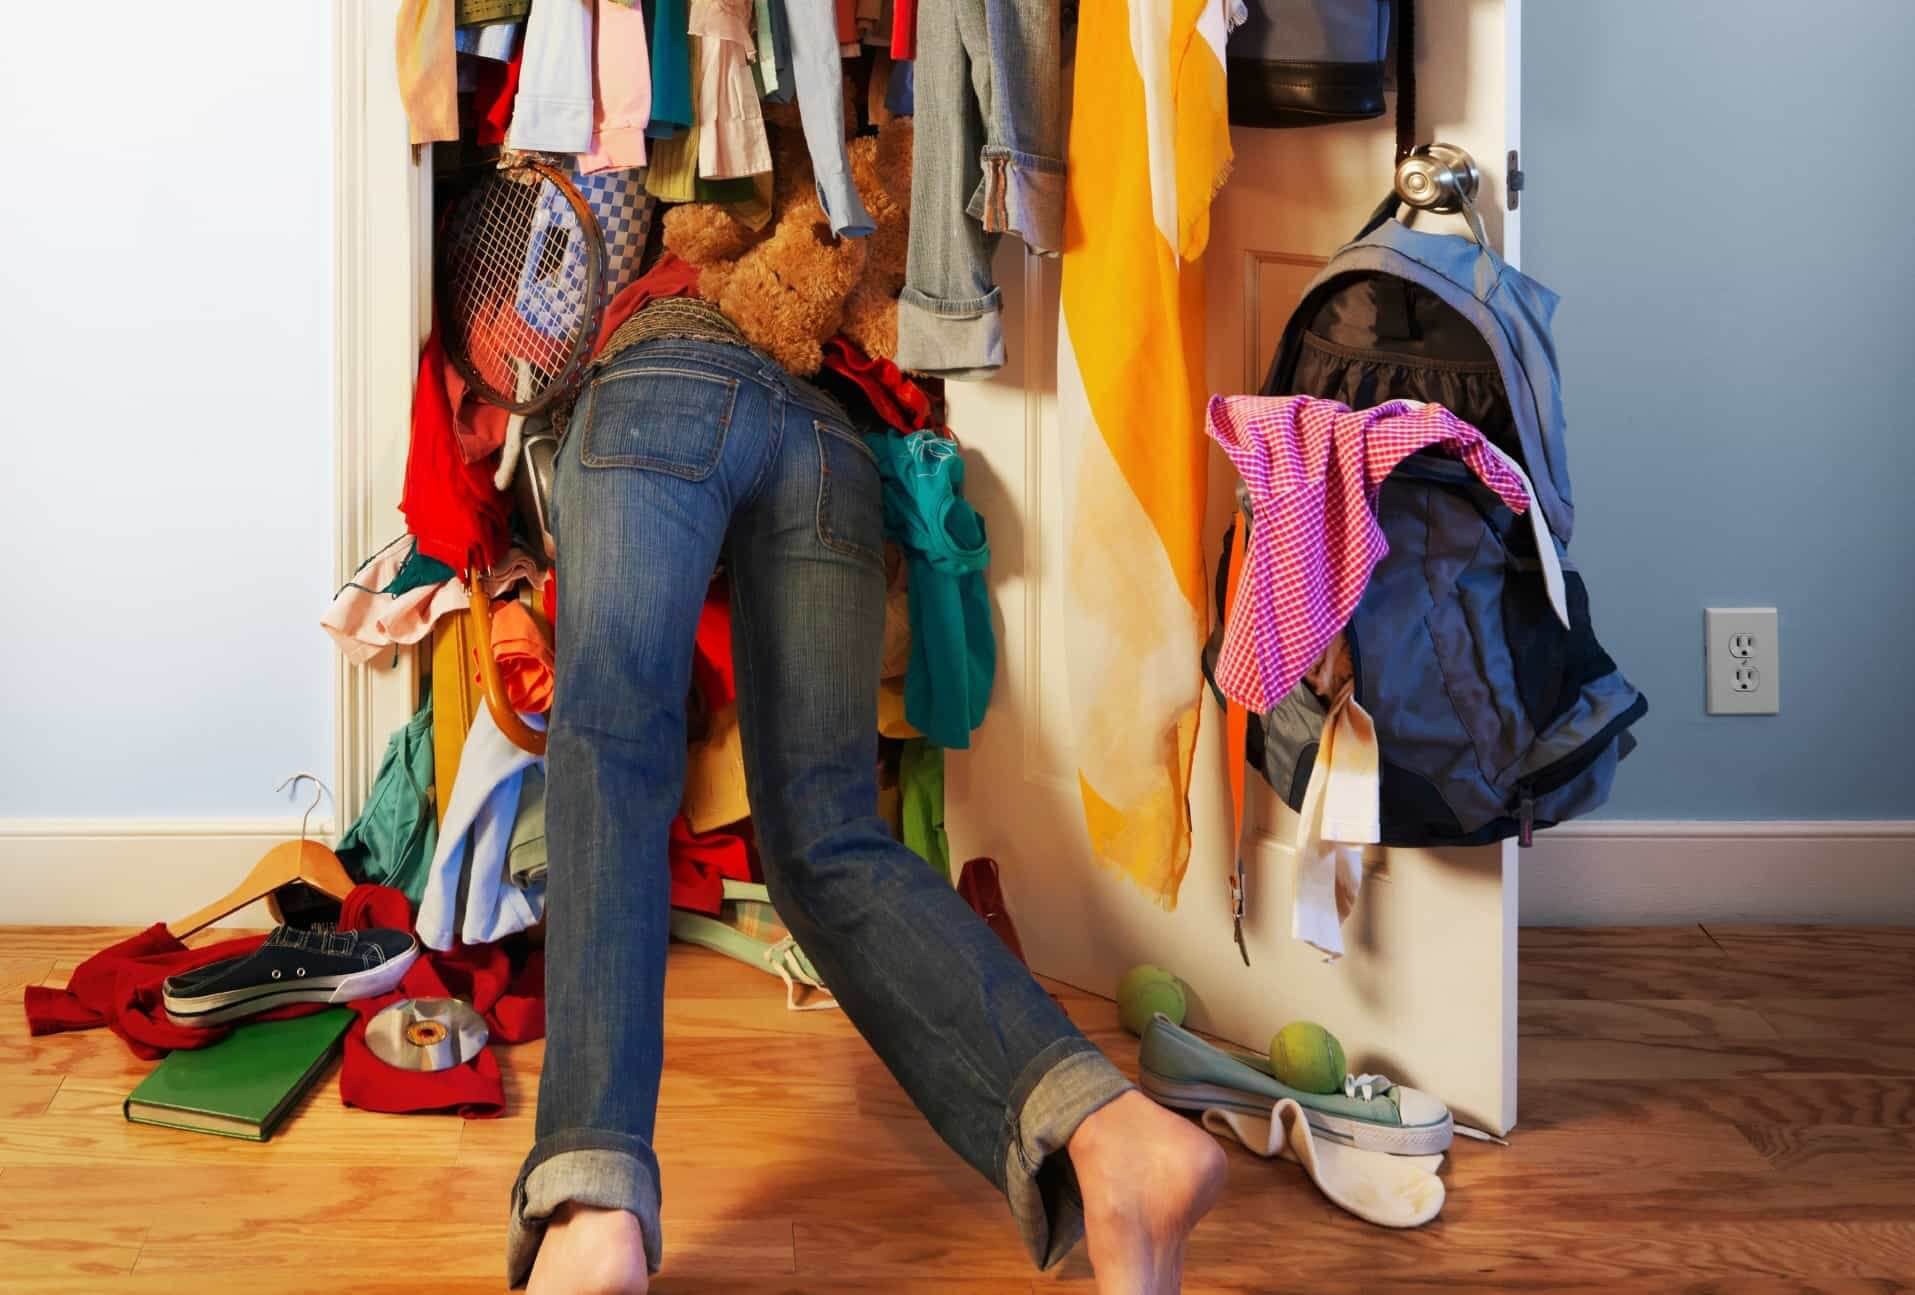 Как организовать пространство в шкафу: полезные правила, чтобы избежать бардака